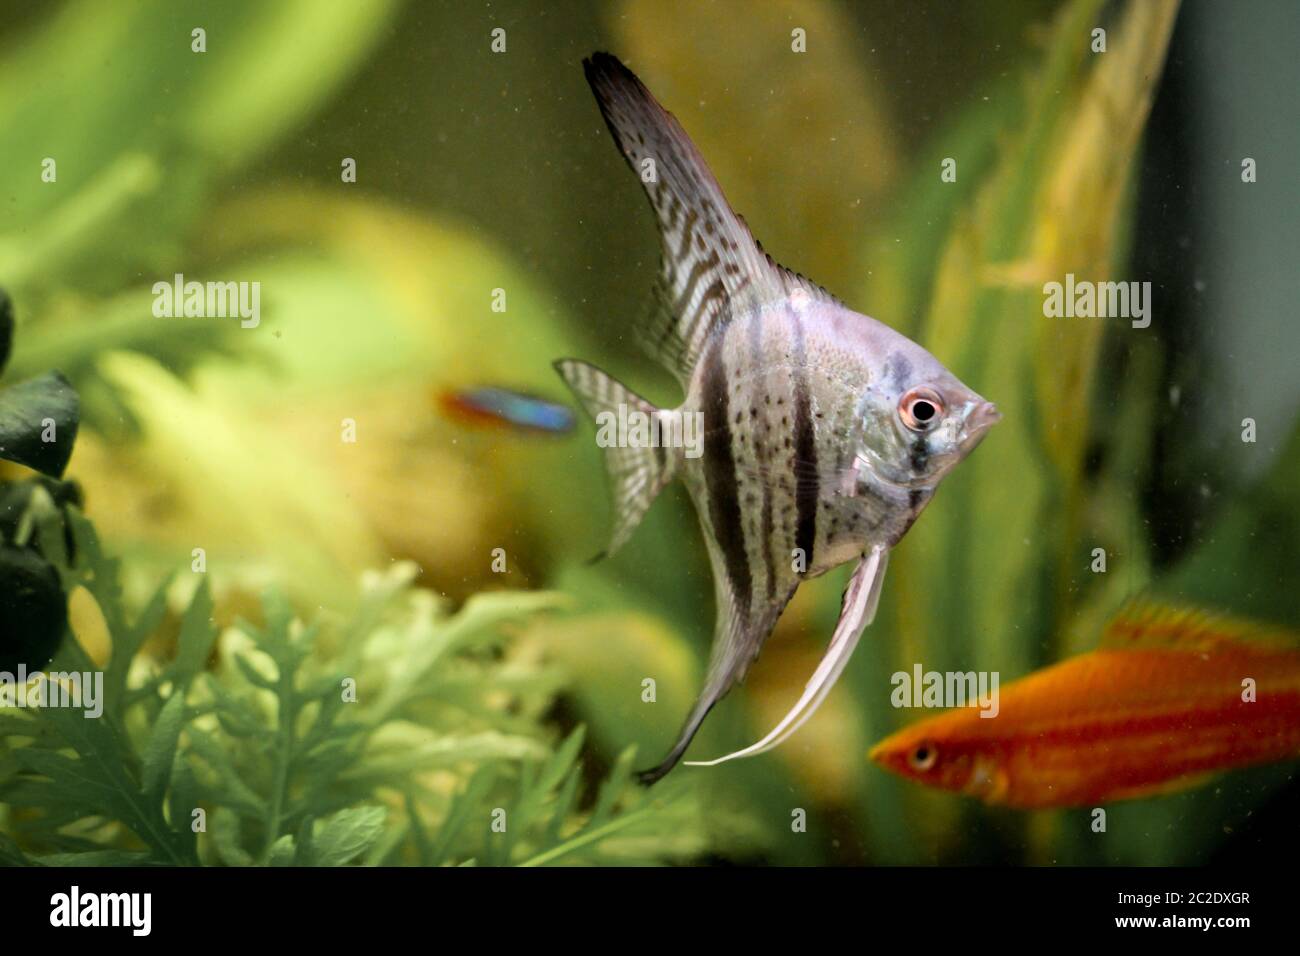 Detail of a skalar fish in aquarium Stock Photo